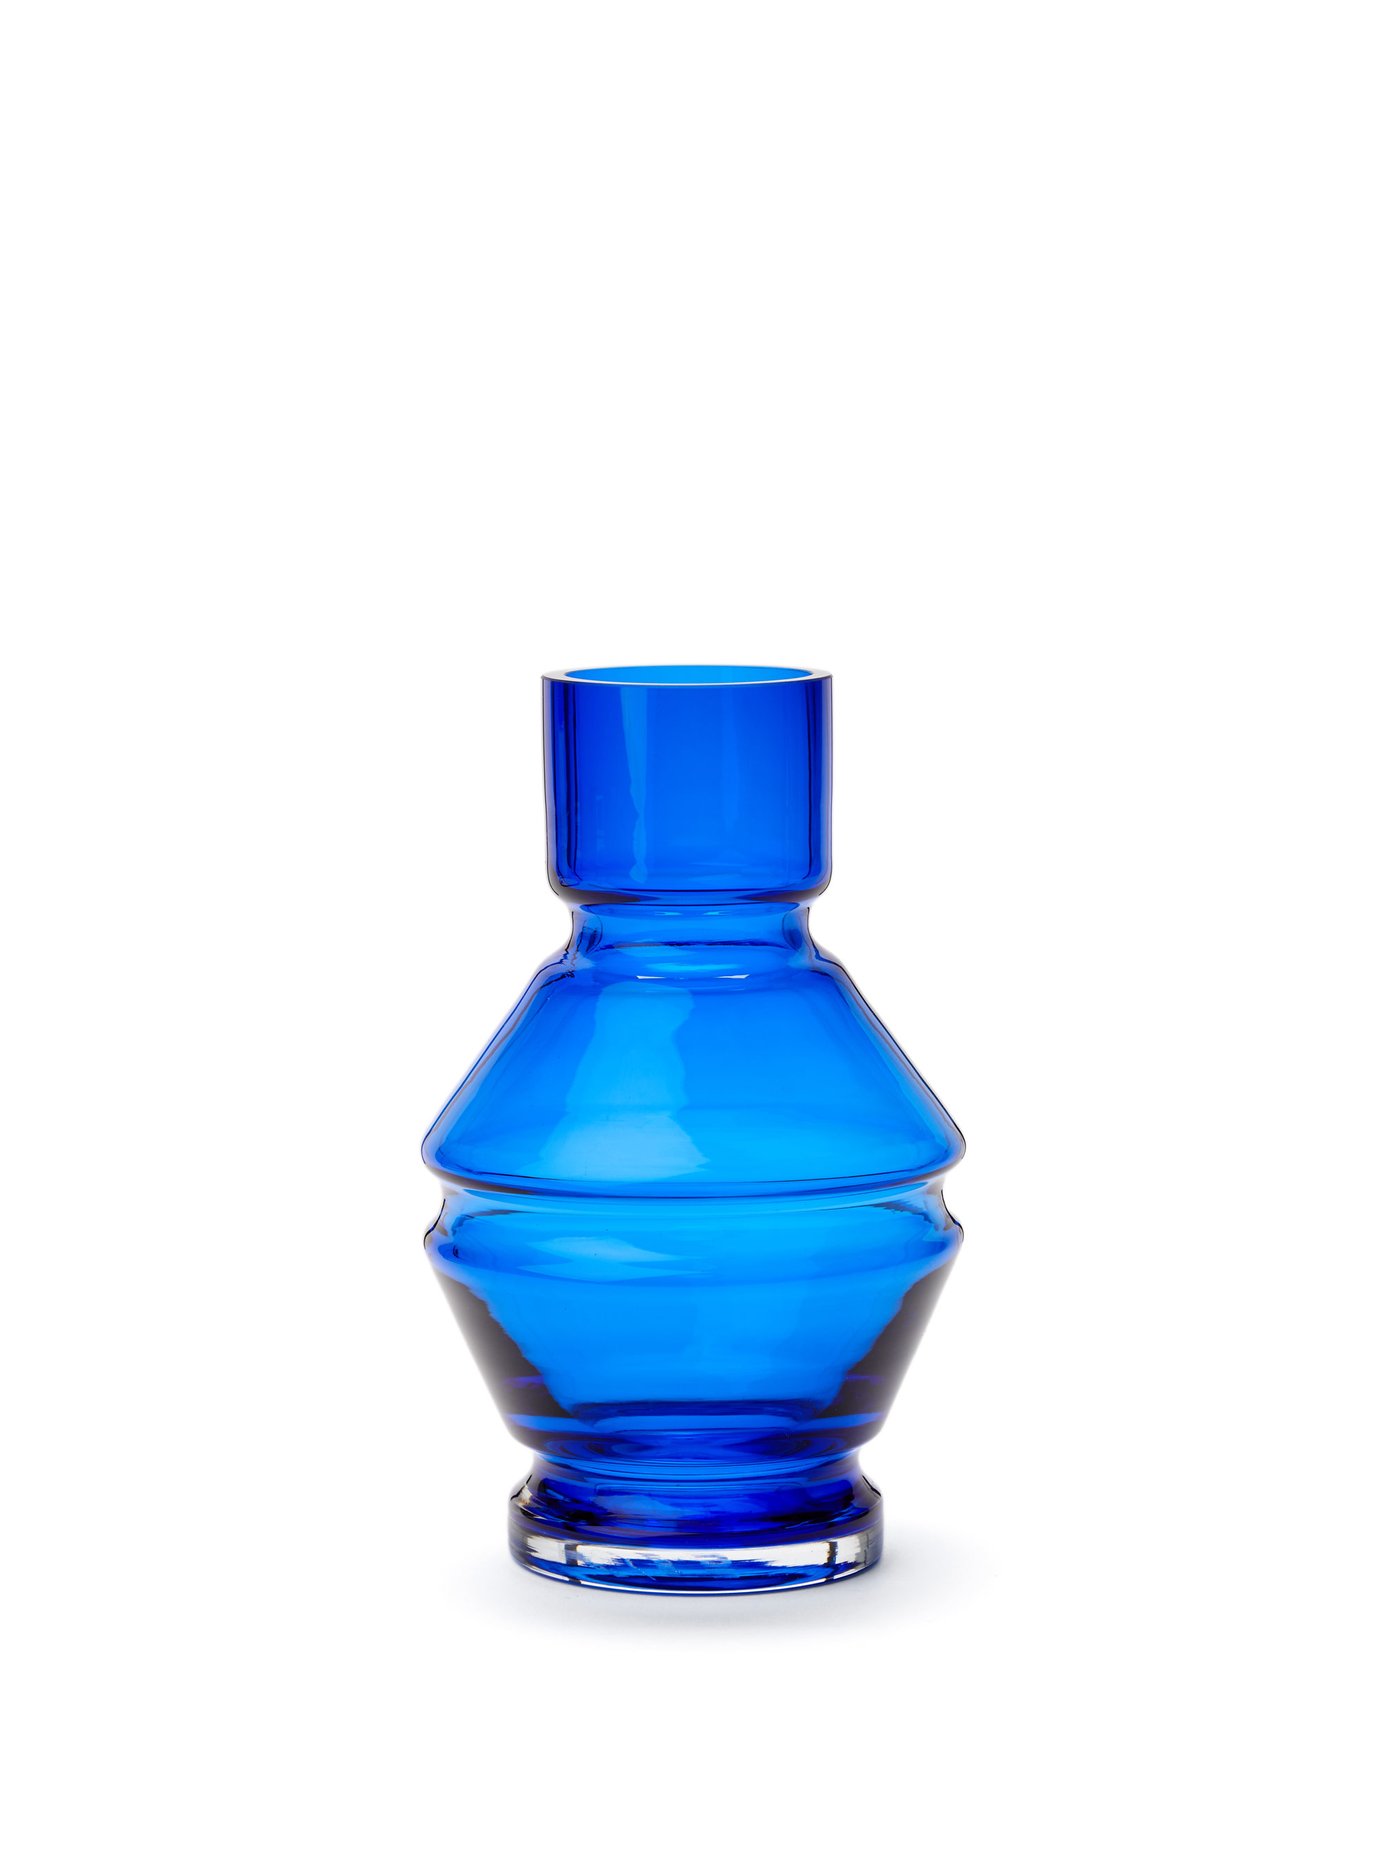 라위 글라스 화병 (기은세 꽃병, 덴마크 프리미엄 인테리어 브랜드) Raawii Blue Relae small glass vase